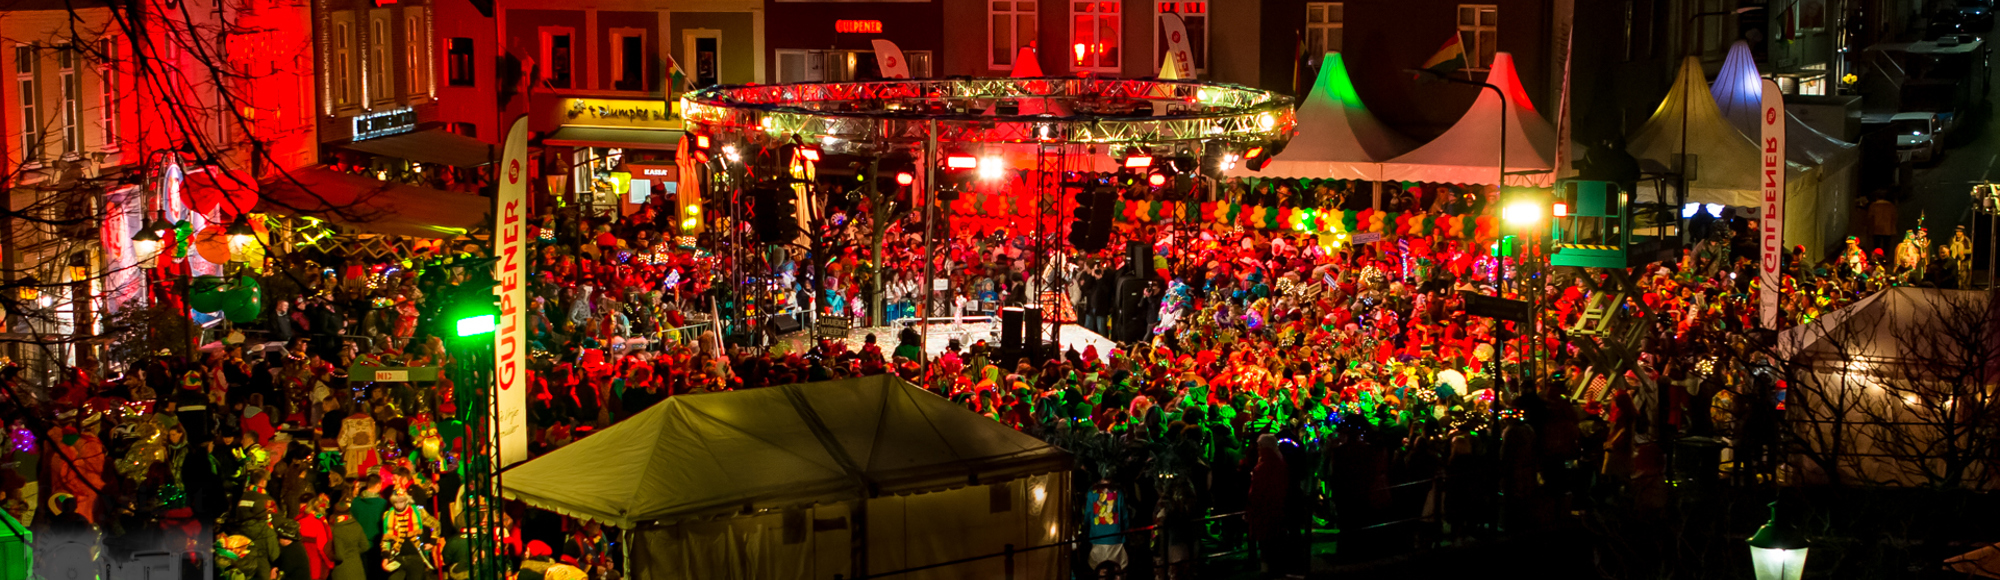 Carnaval Groeëte Gulpener Vastelaoves Finale met rood, geel en groene kleuren